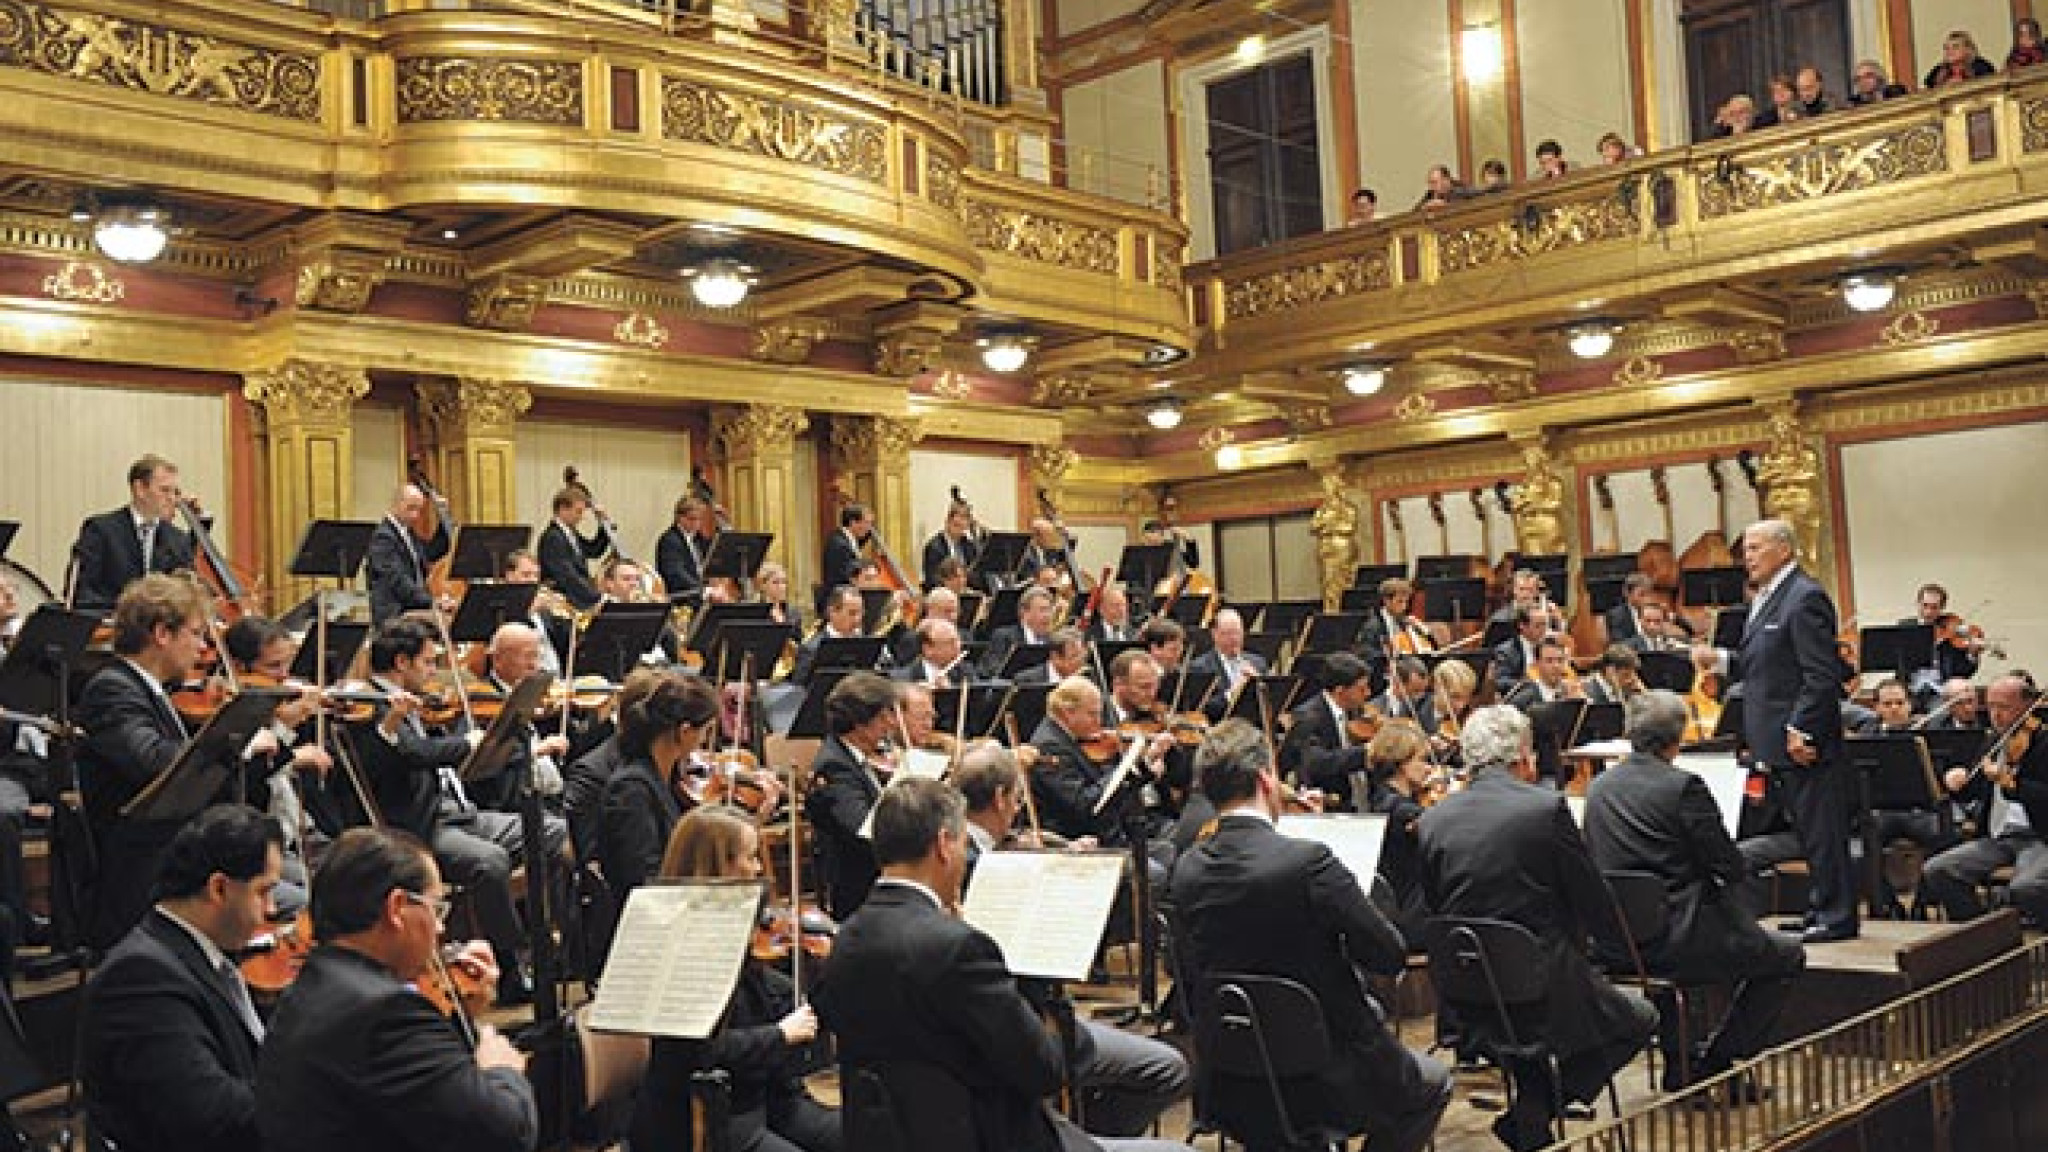 Klassische Ouvertüren – Große Dirigenten der Wiener Philharmoniker